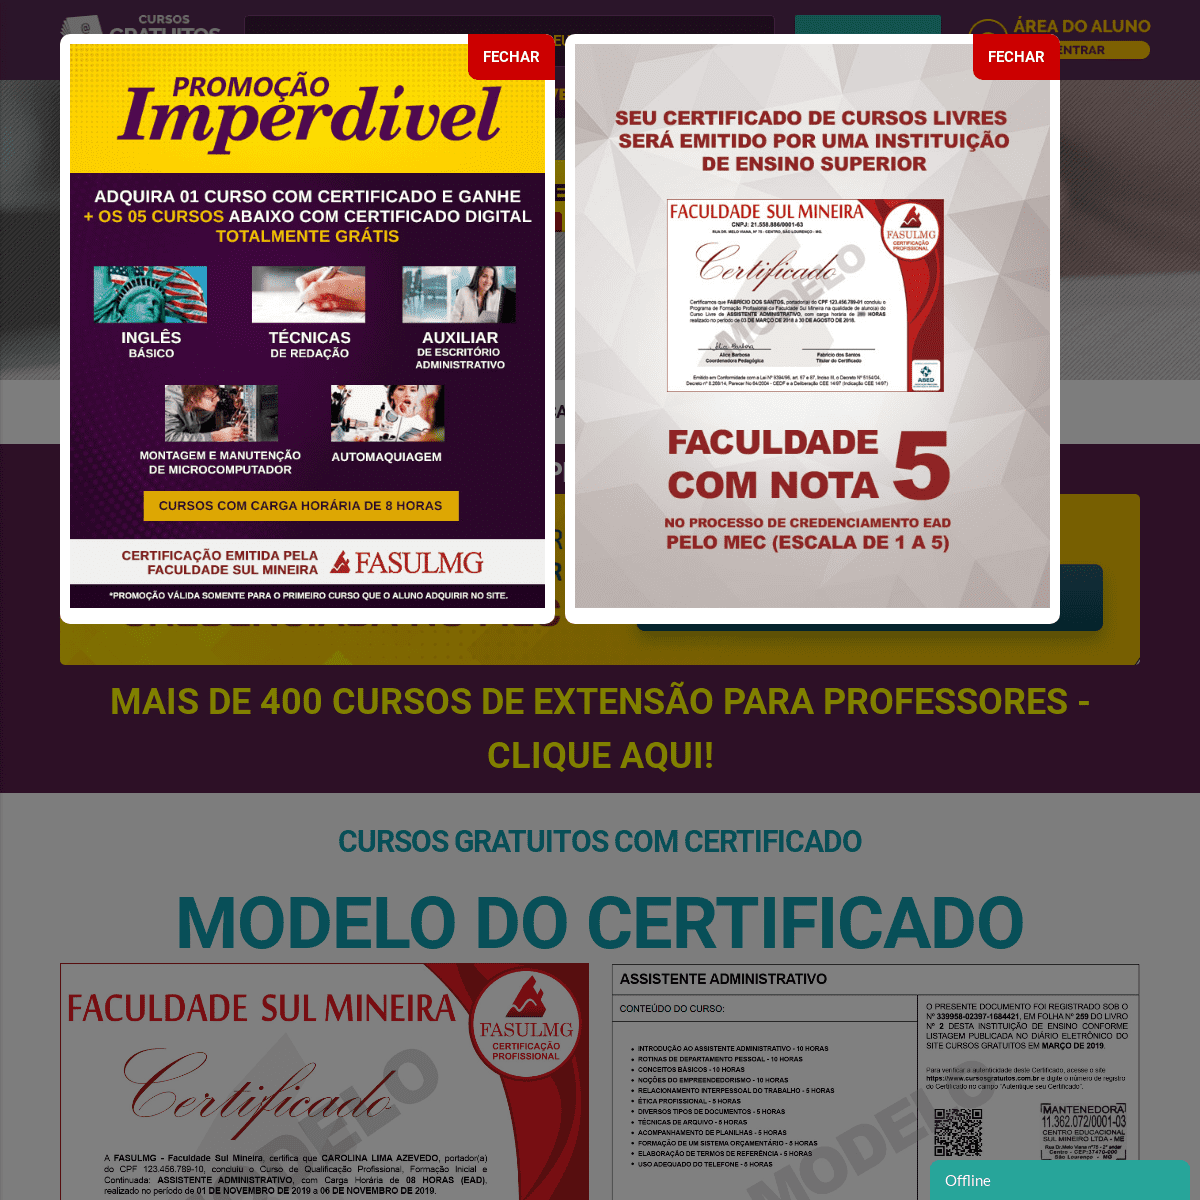 A complete backup of cursosgratuitos.com.br